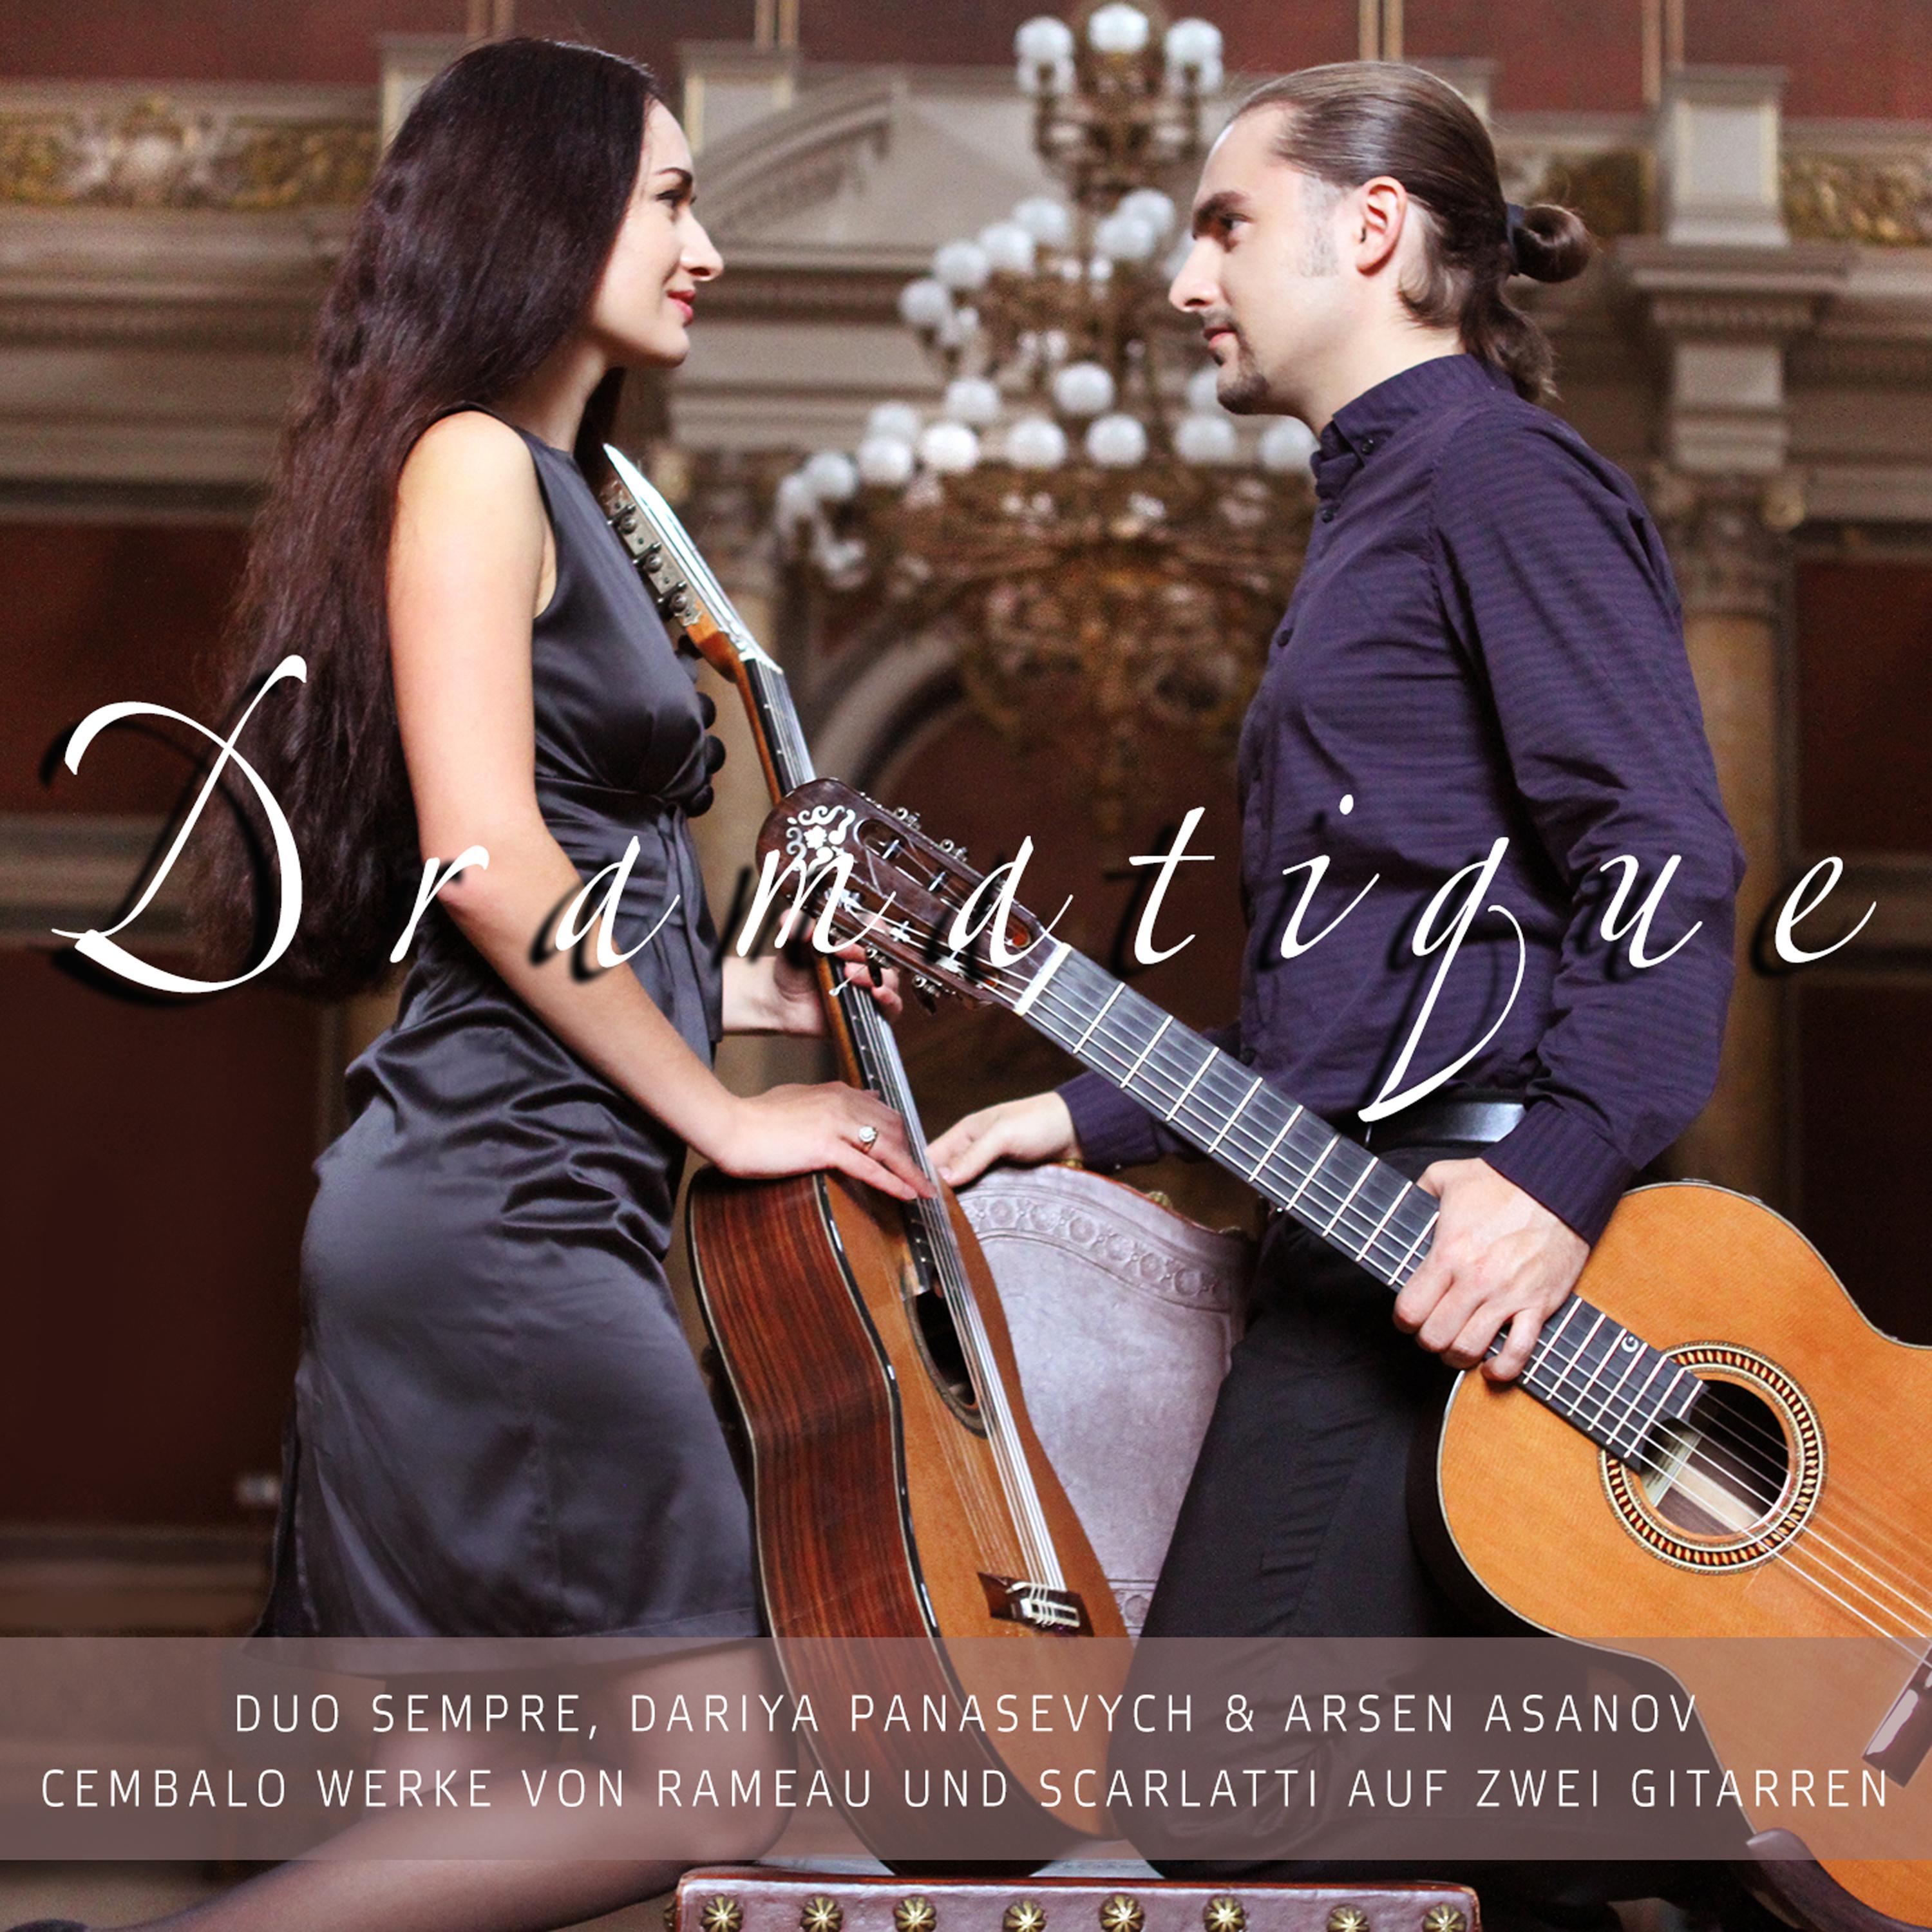 Harpsichord Suite in D-Major (Arr. for two guitars): Les Tendres Plaintes